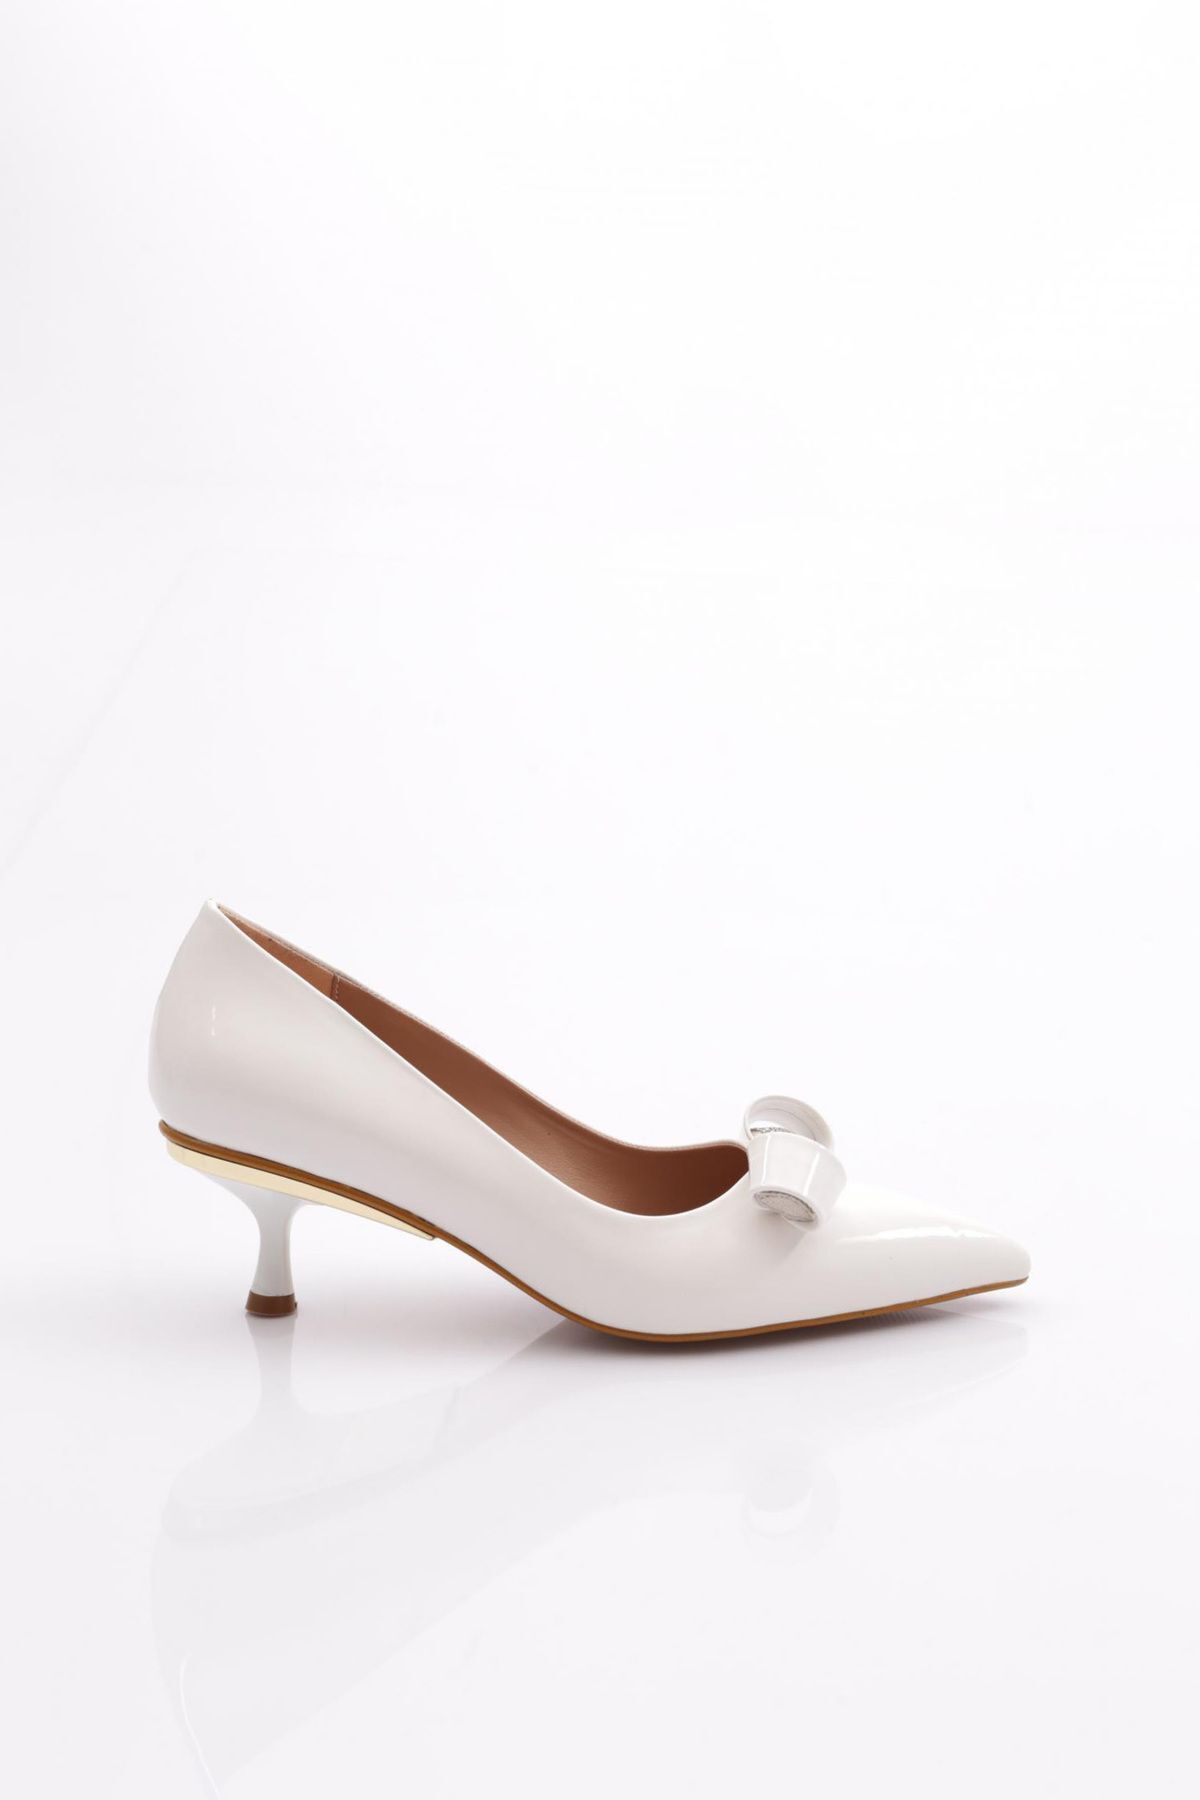 Dgn 0551 Kadın Üstü Taşlı Topuklu Ayakkabı Beyaz Rugan